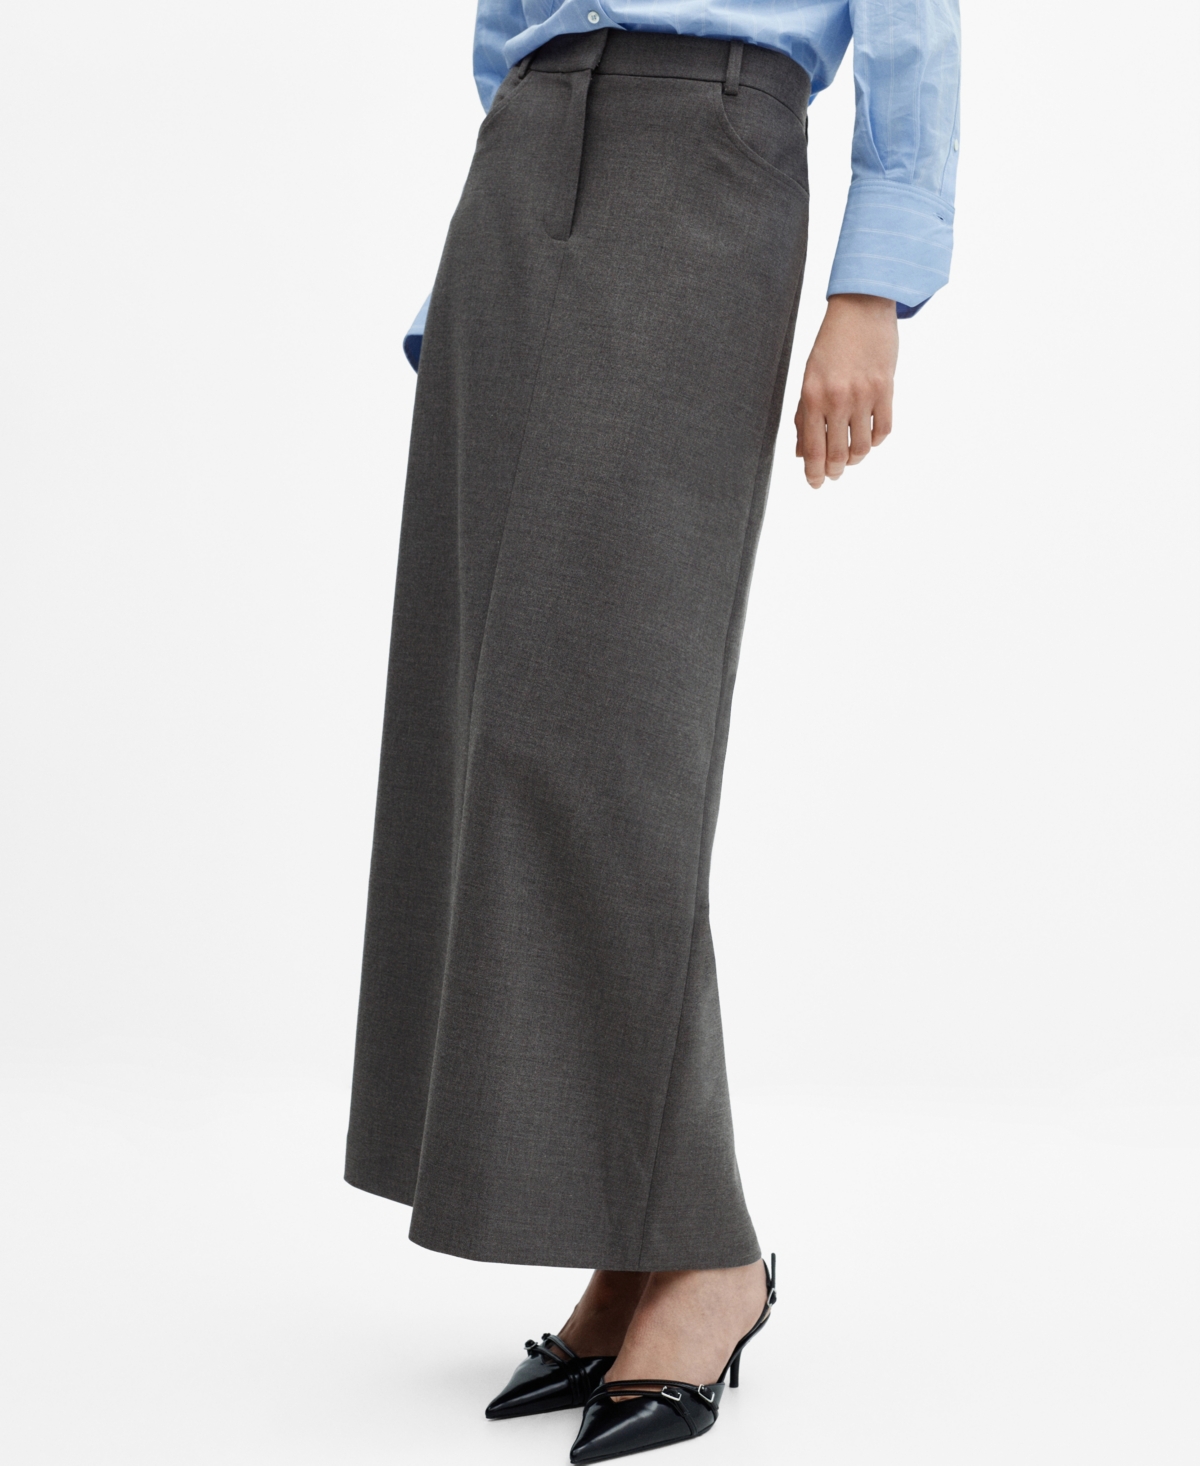 Women's Slit Long Skirt - Grey